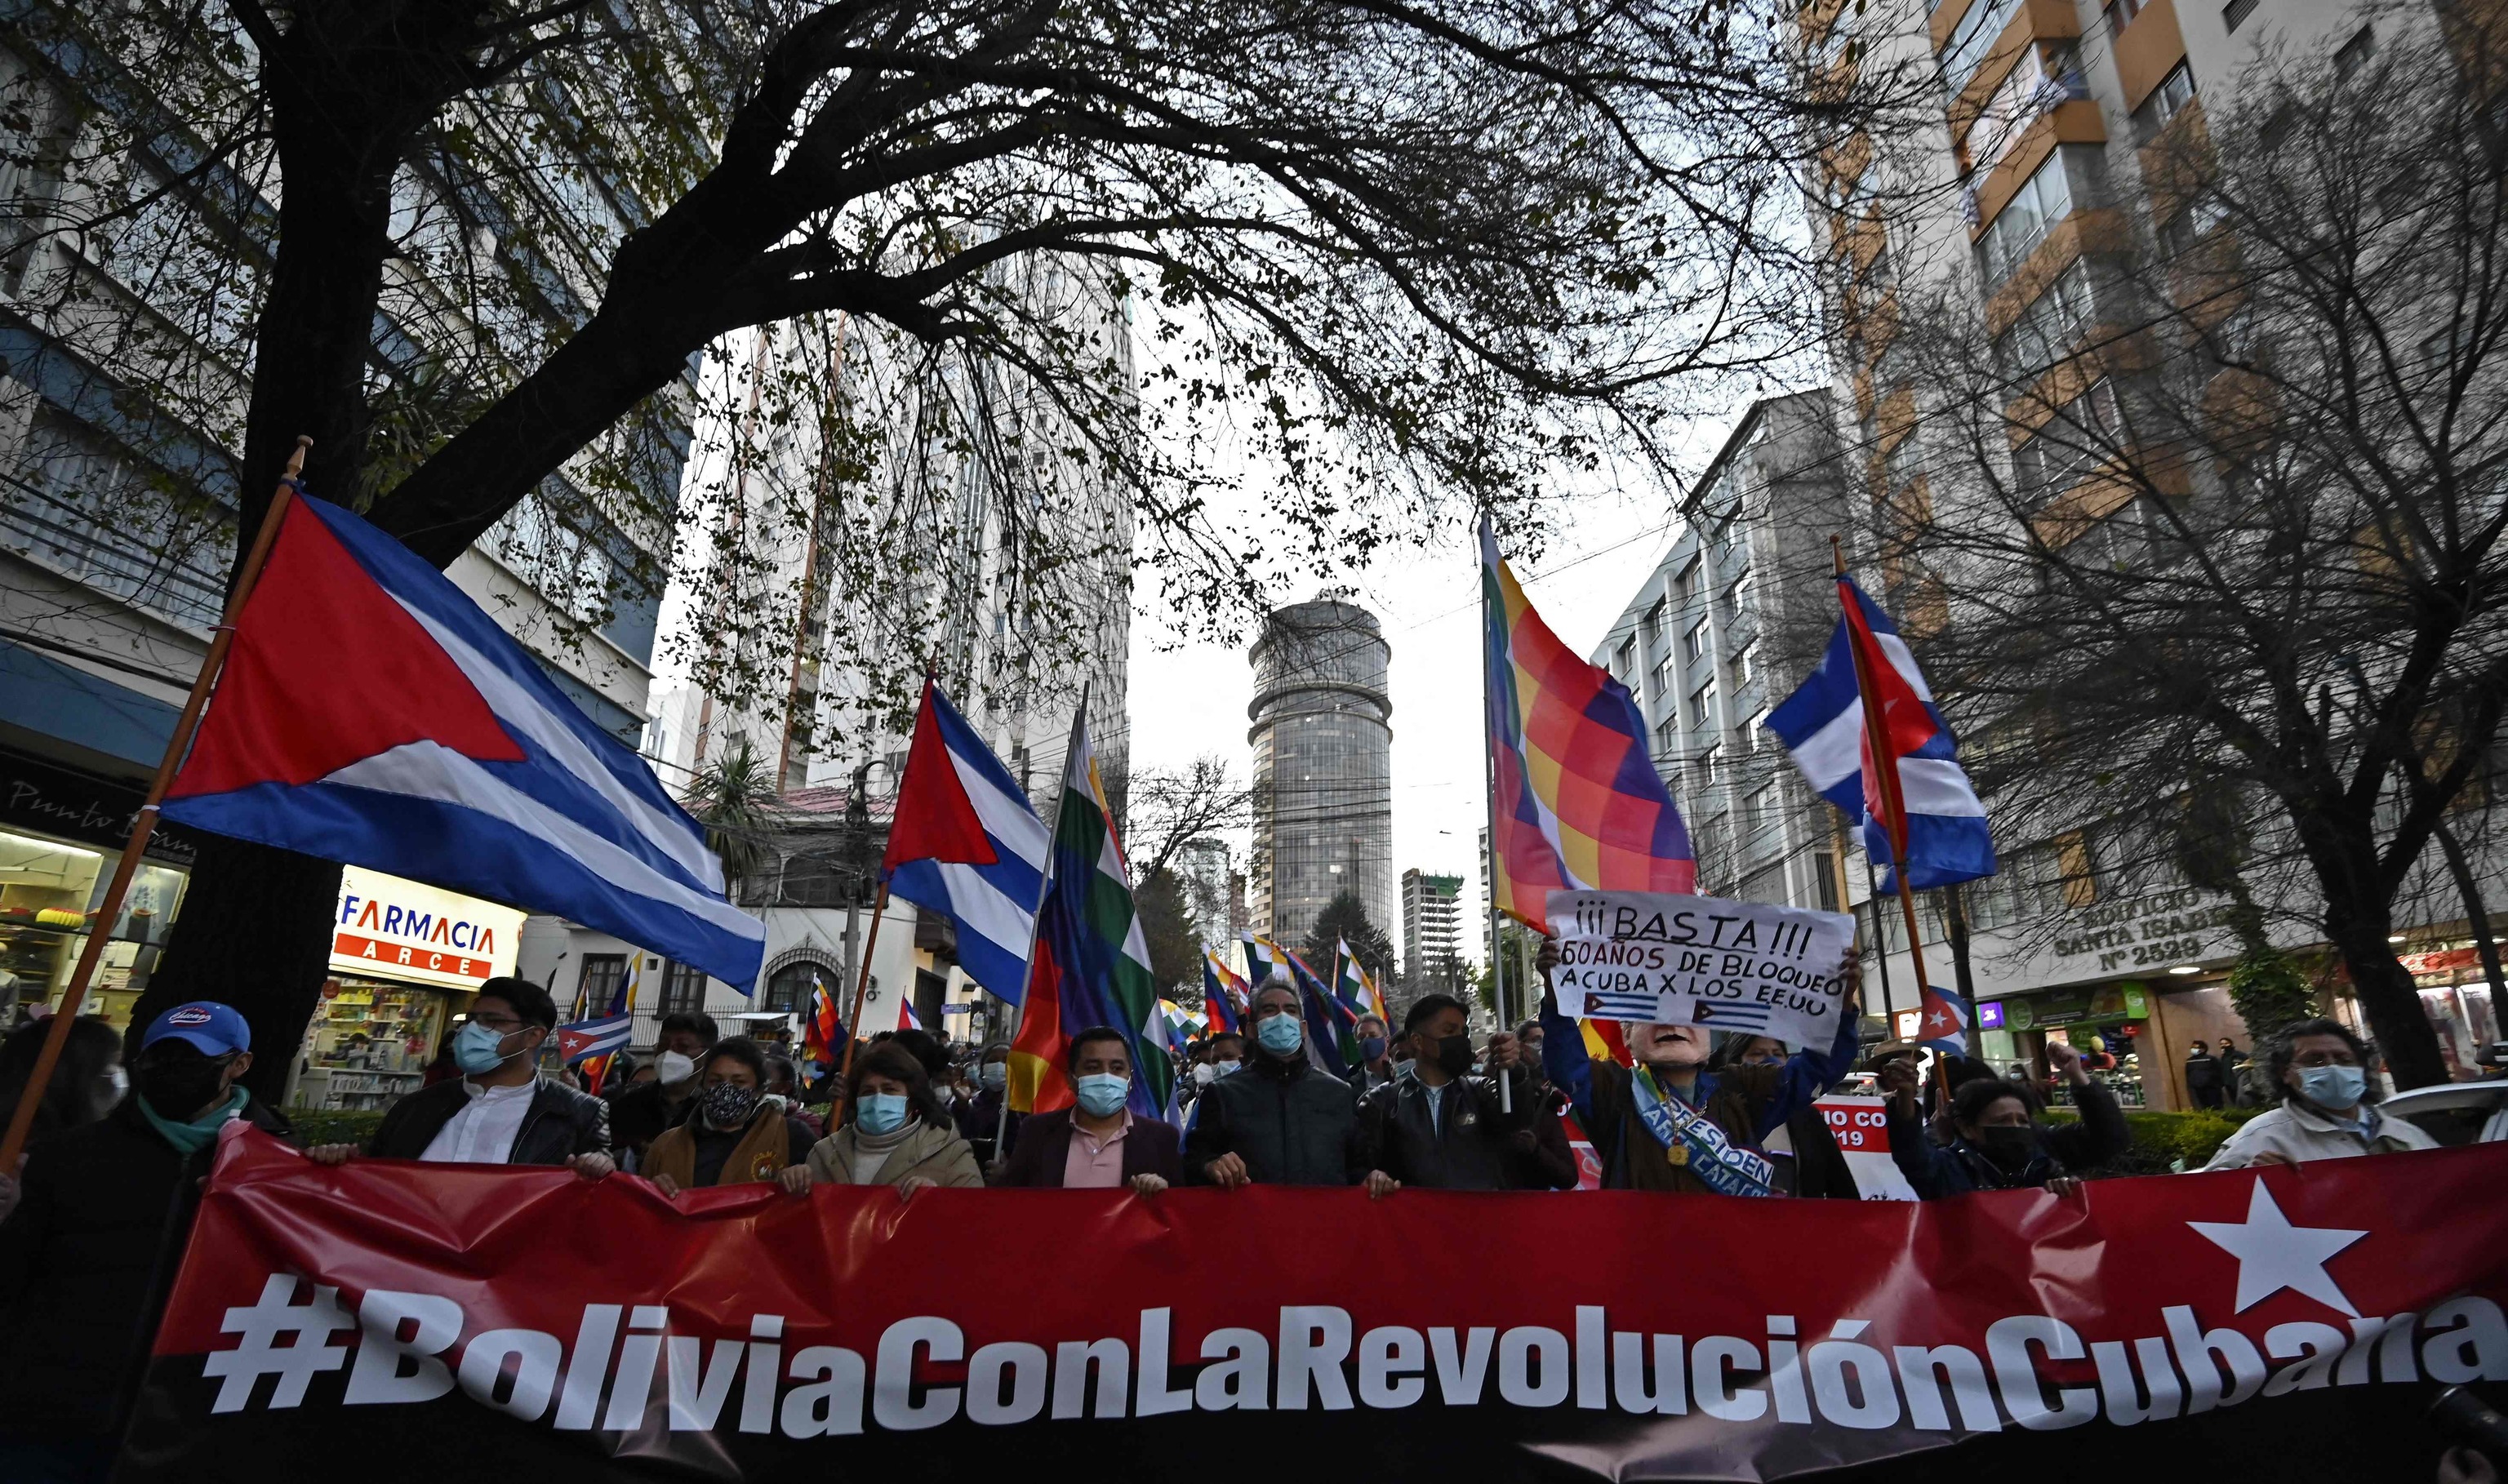 La izquierda regional mantiene su apoyo incondicional a la dictadura cubana  | Internacional